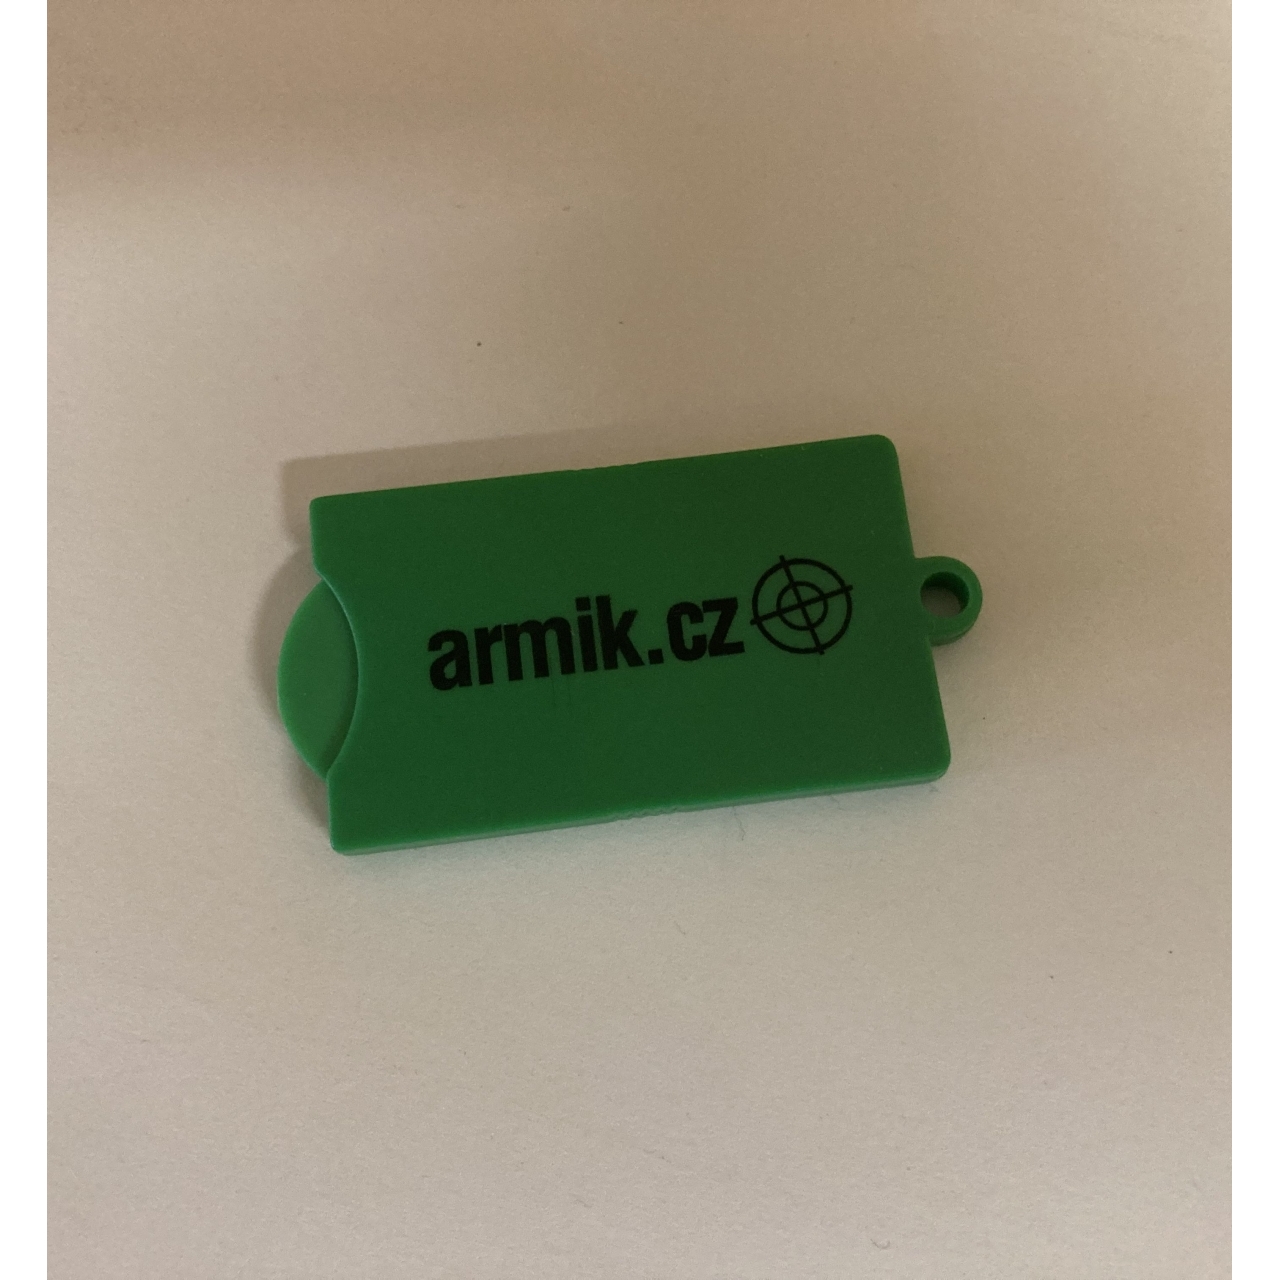 Přívěsek na klíče Armik.cz - zelený